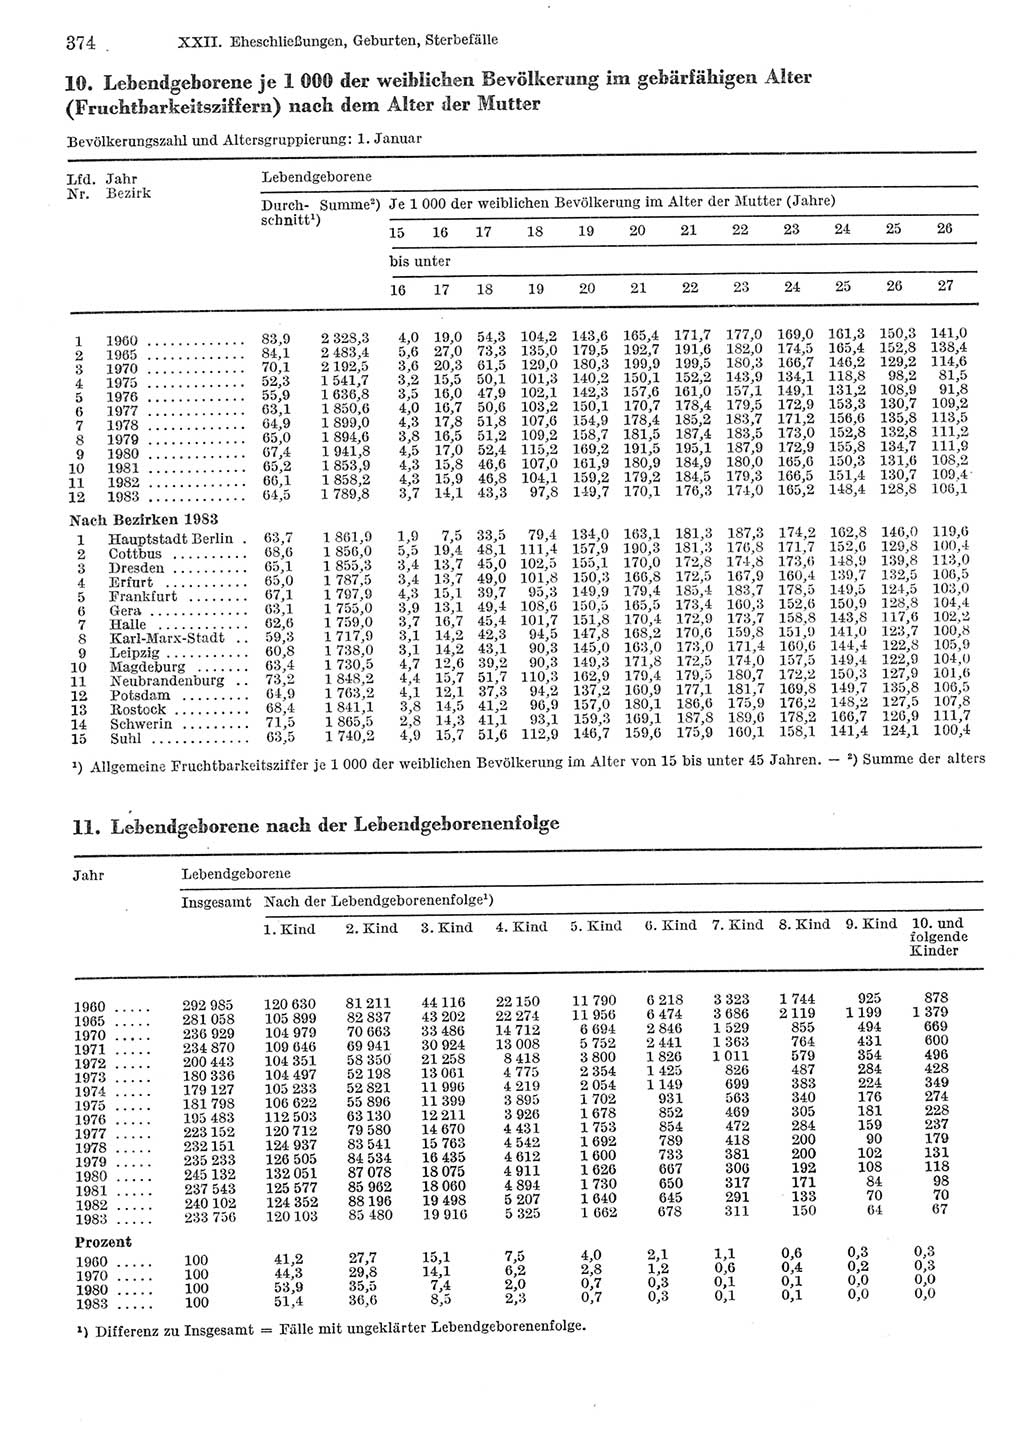 Statistisches Jahrbuch der Deutschen Demokratischen Republik (DDR) 1985, Seite 374 (Stat. Jb. DDR 1985, S. 374)